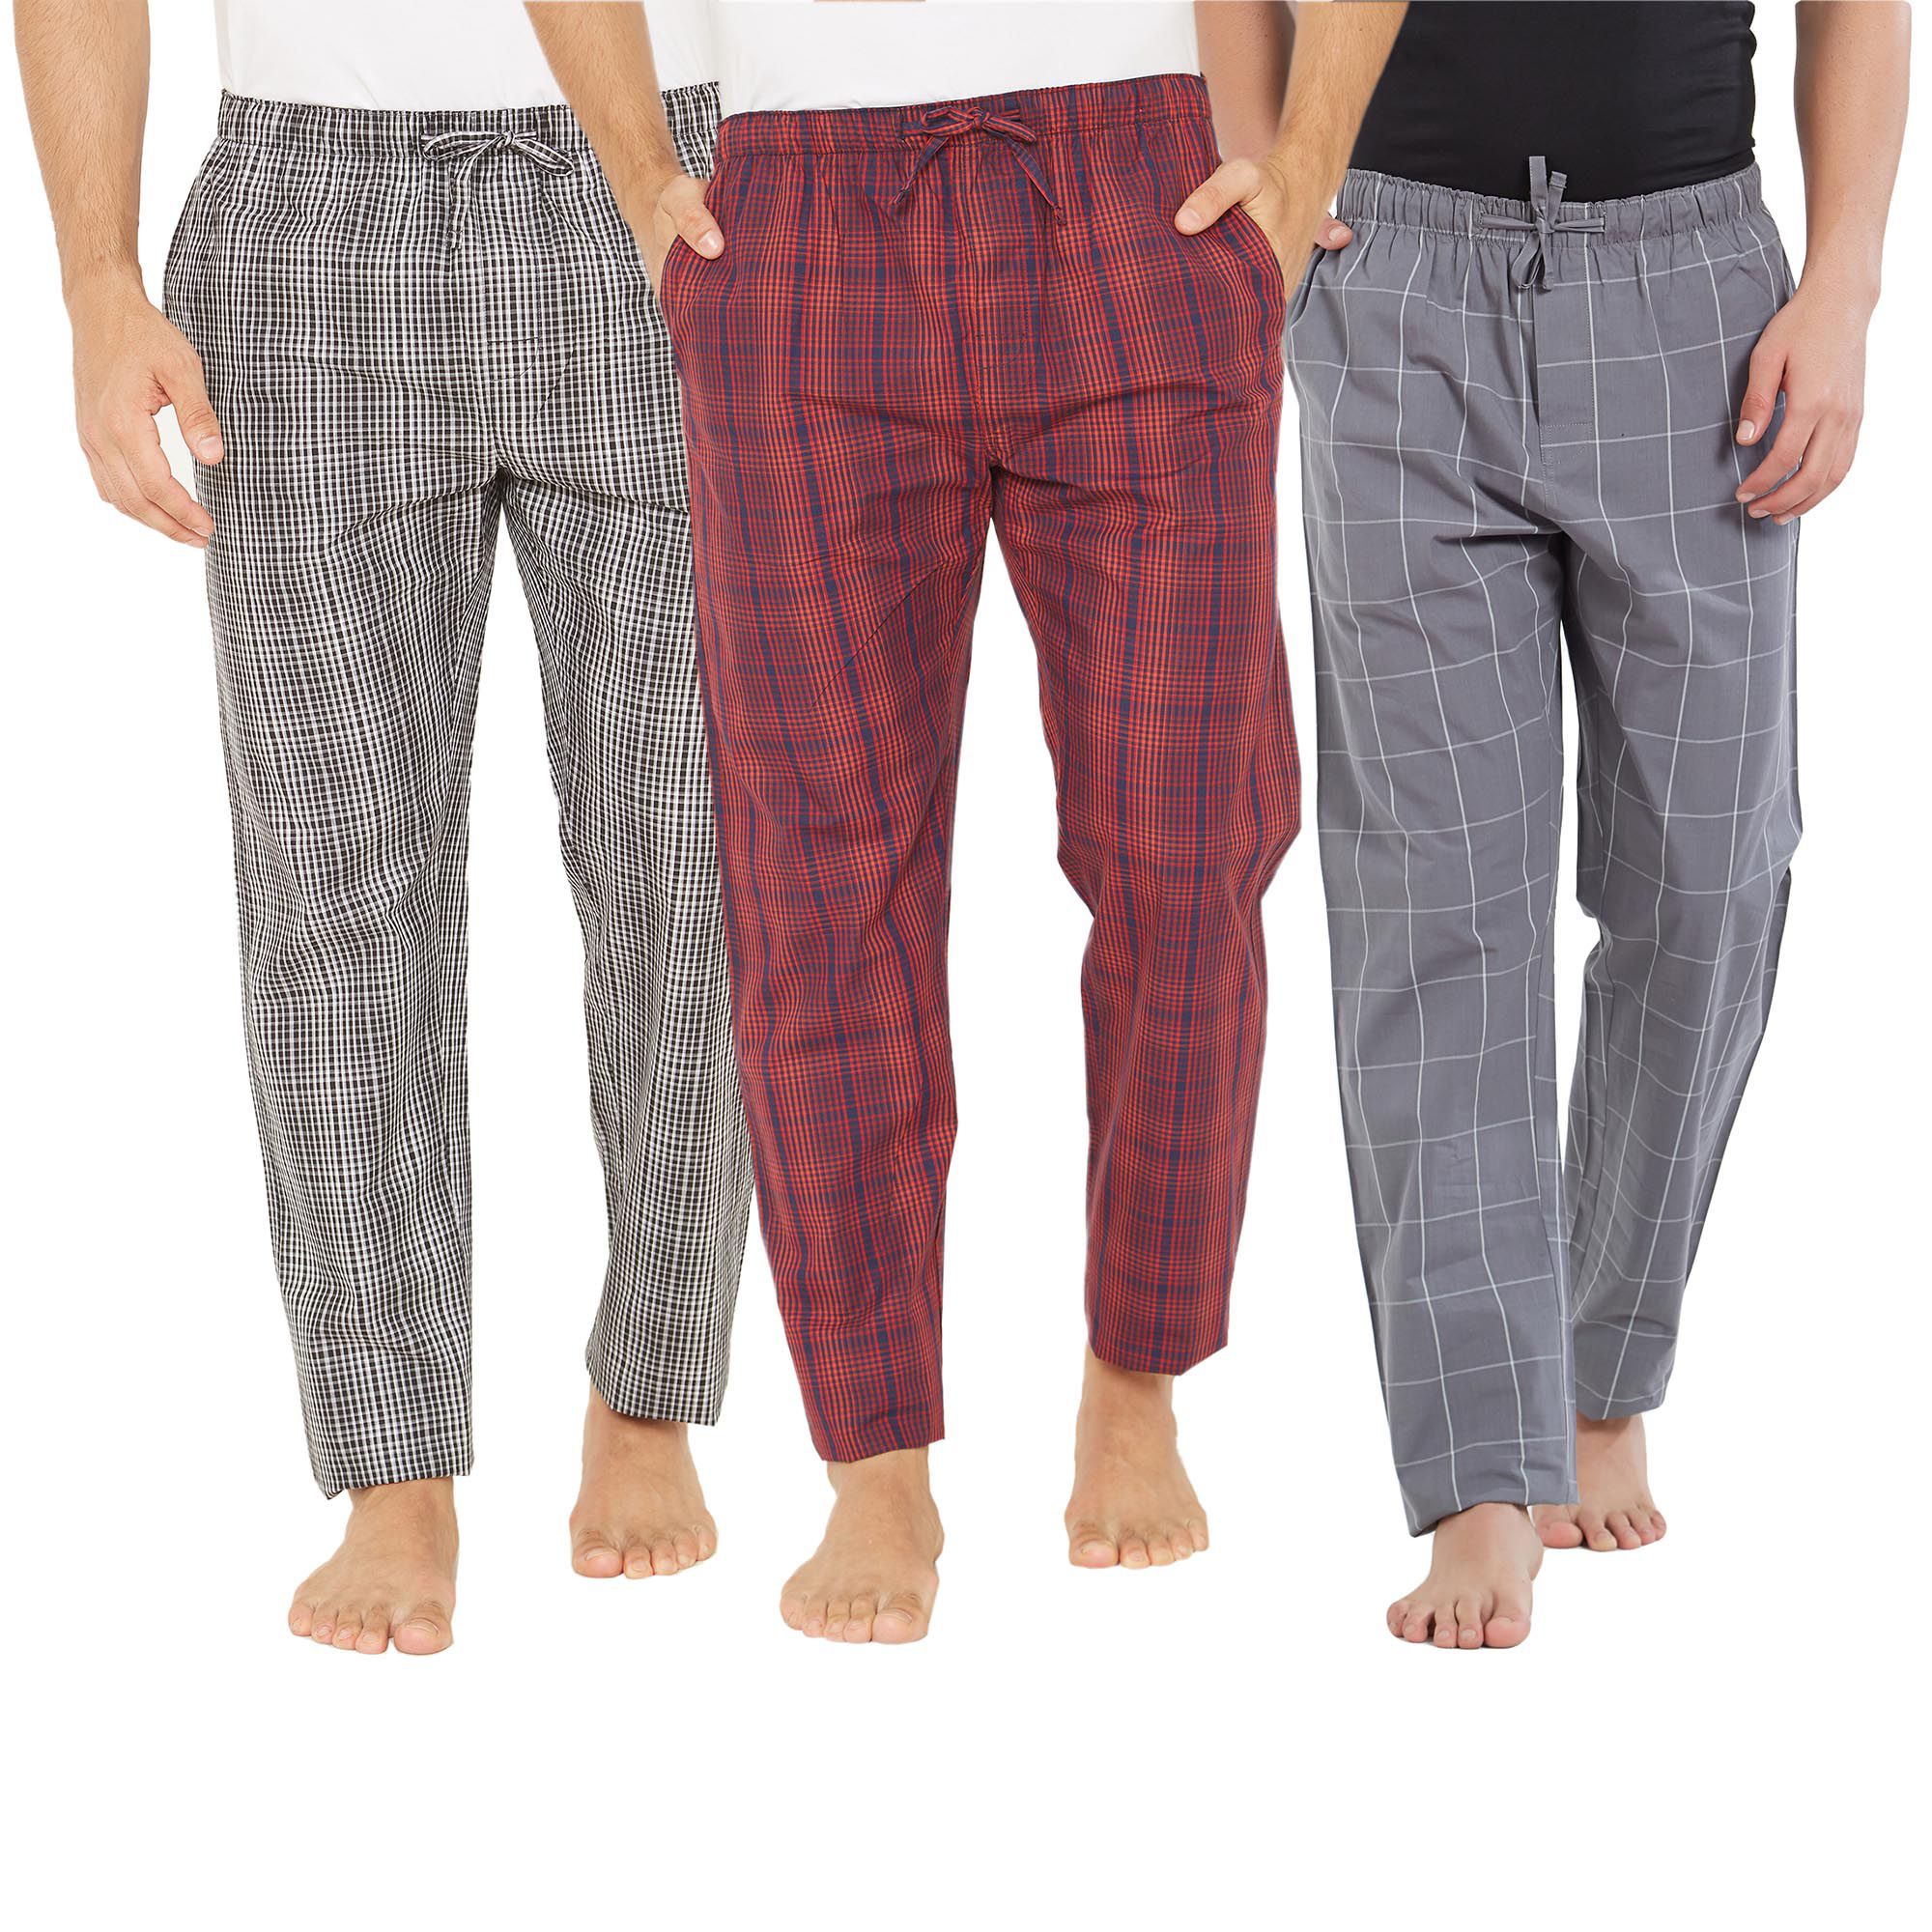 XYXX Multi Pyjamas Pack of 3